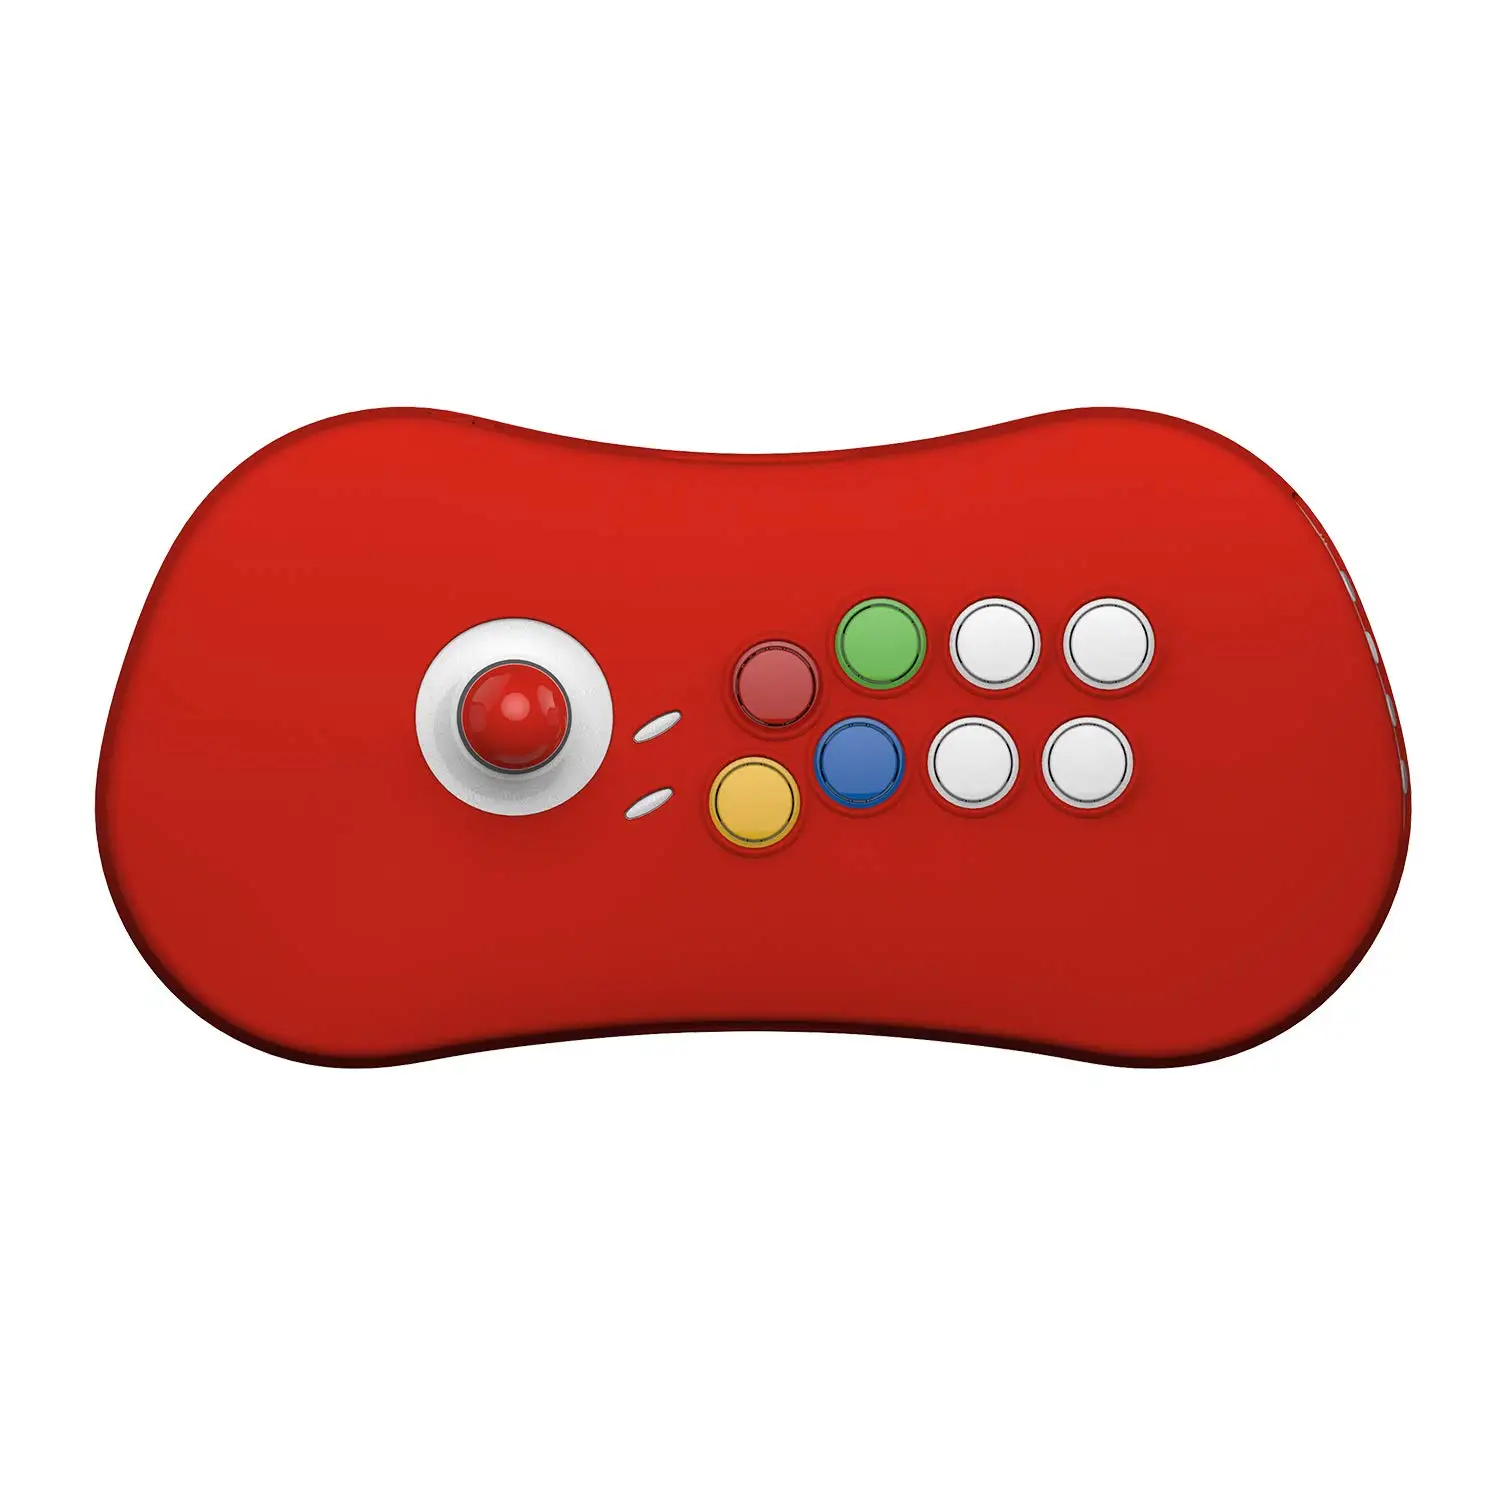 SNK Neogeo Arcade Stick Pro cubierta de silicona roja y amarilla-Neo Geo Pocket Game Part